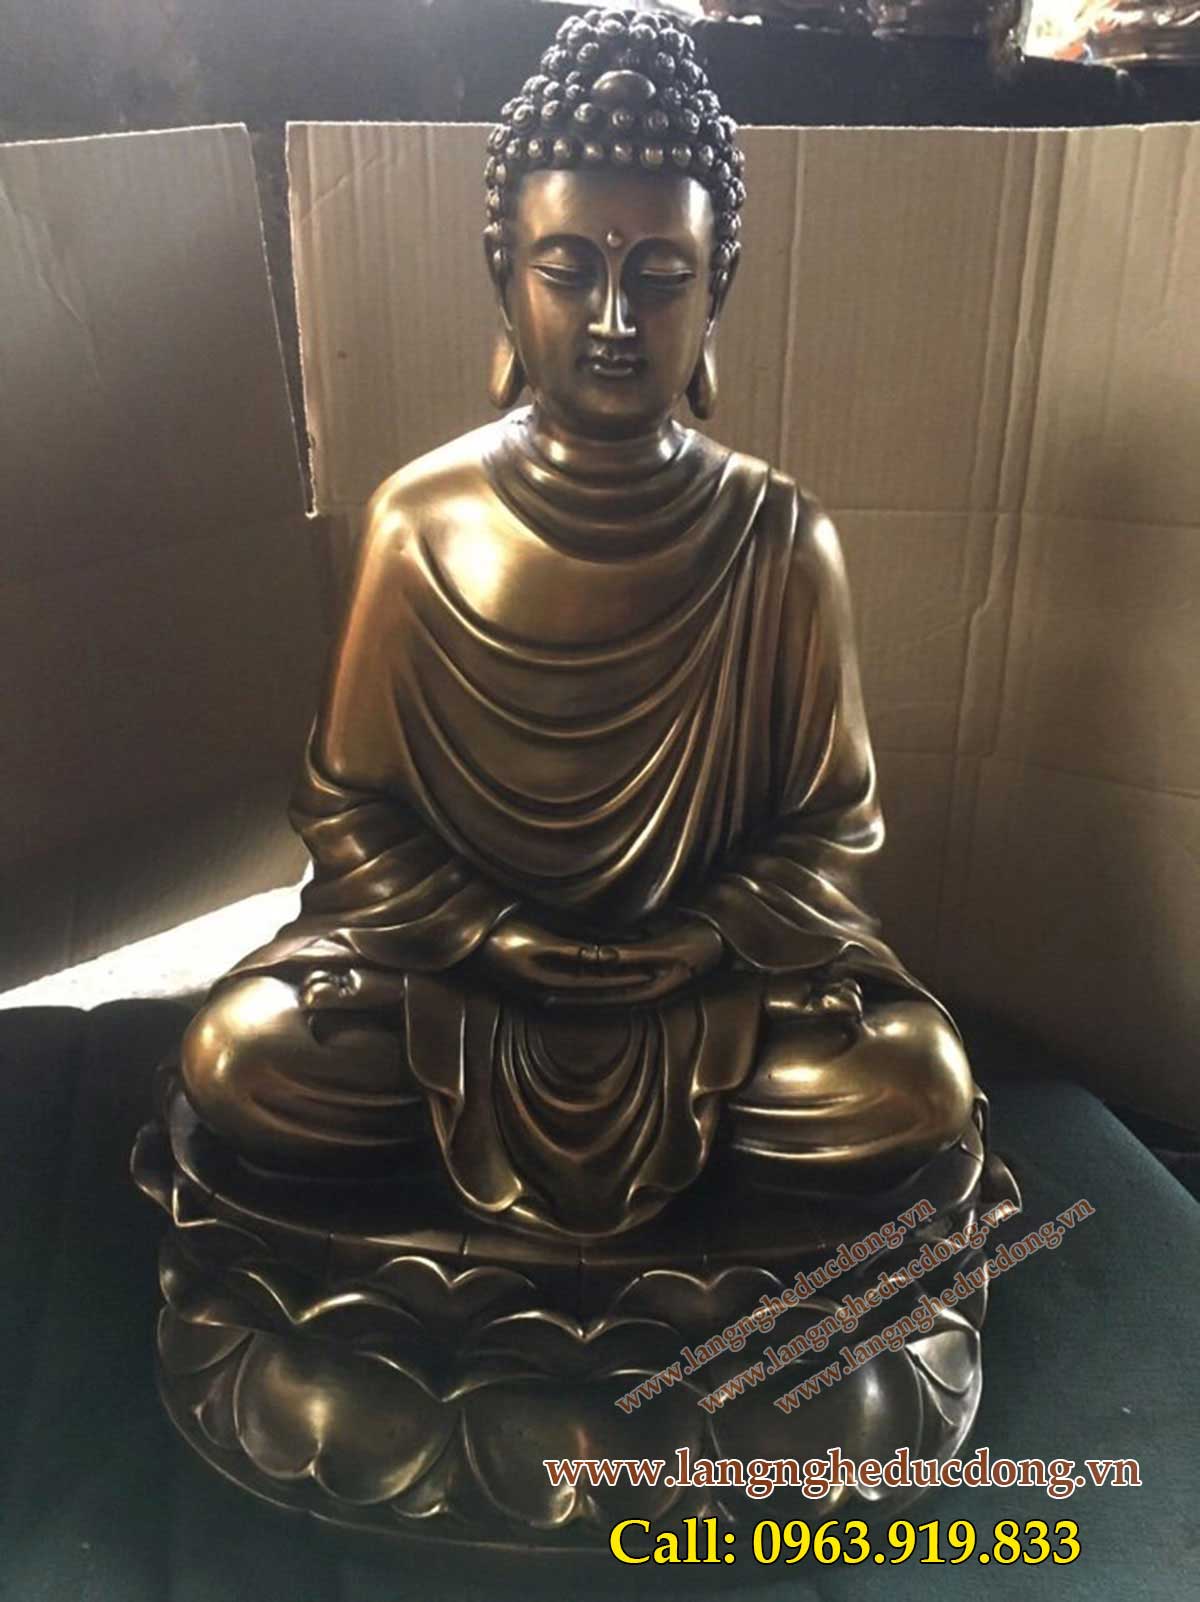 langngheducdong.vn - Tượng Tam thánh, Tam thế Phật, tượng phật